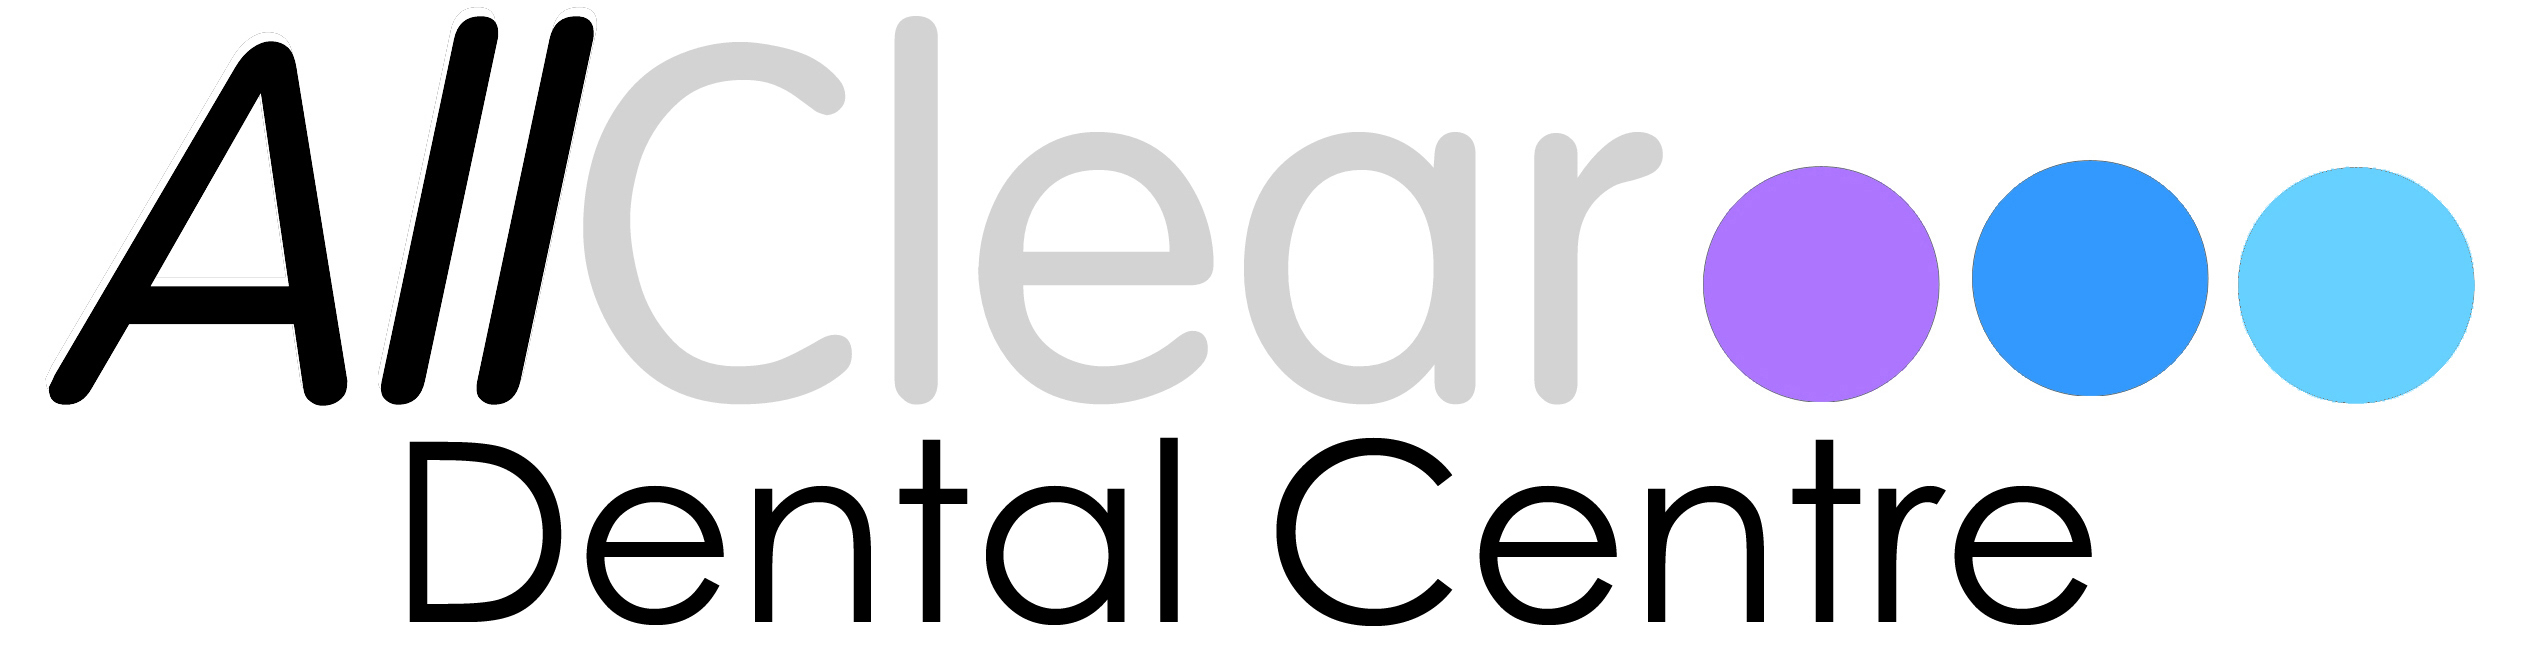 Image of AllClear Dental Centre logo